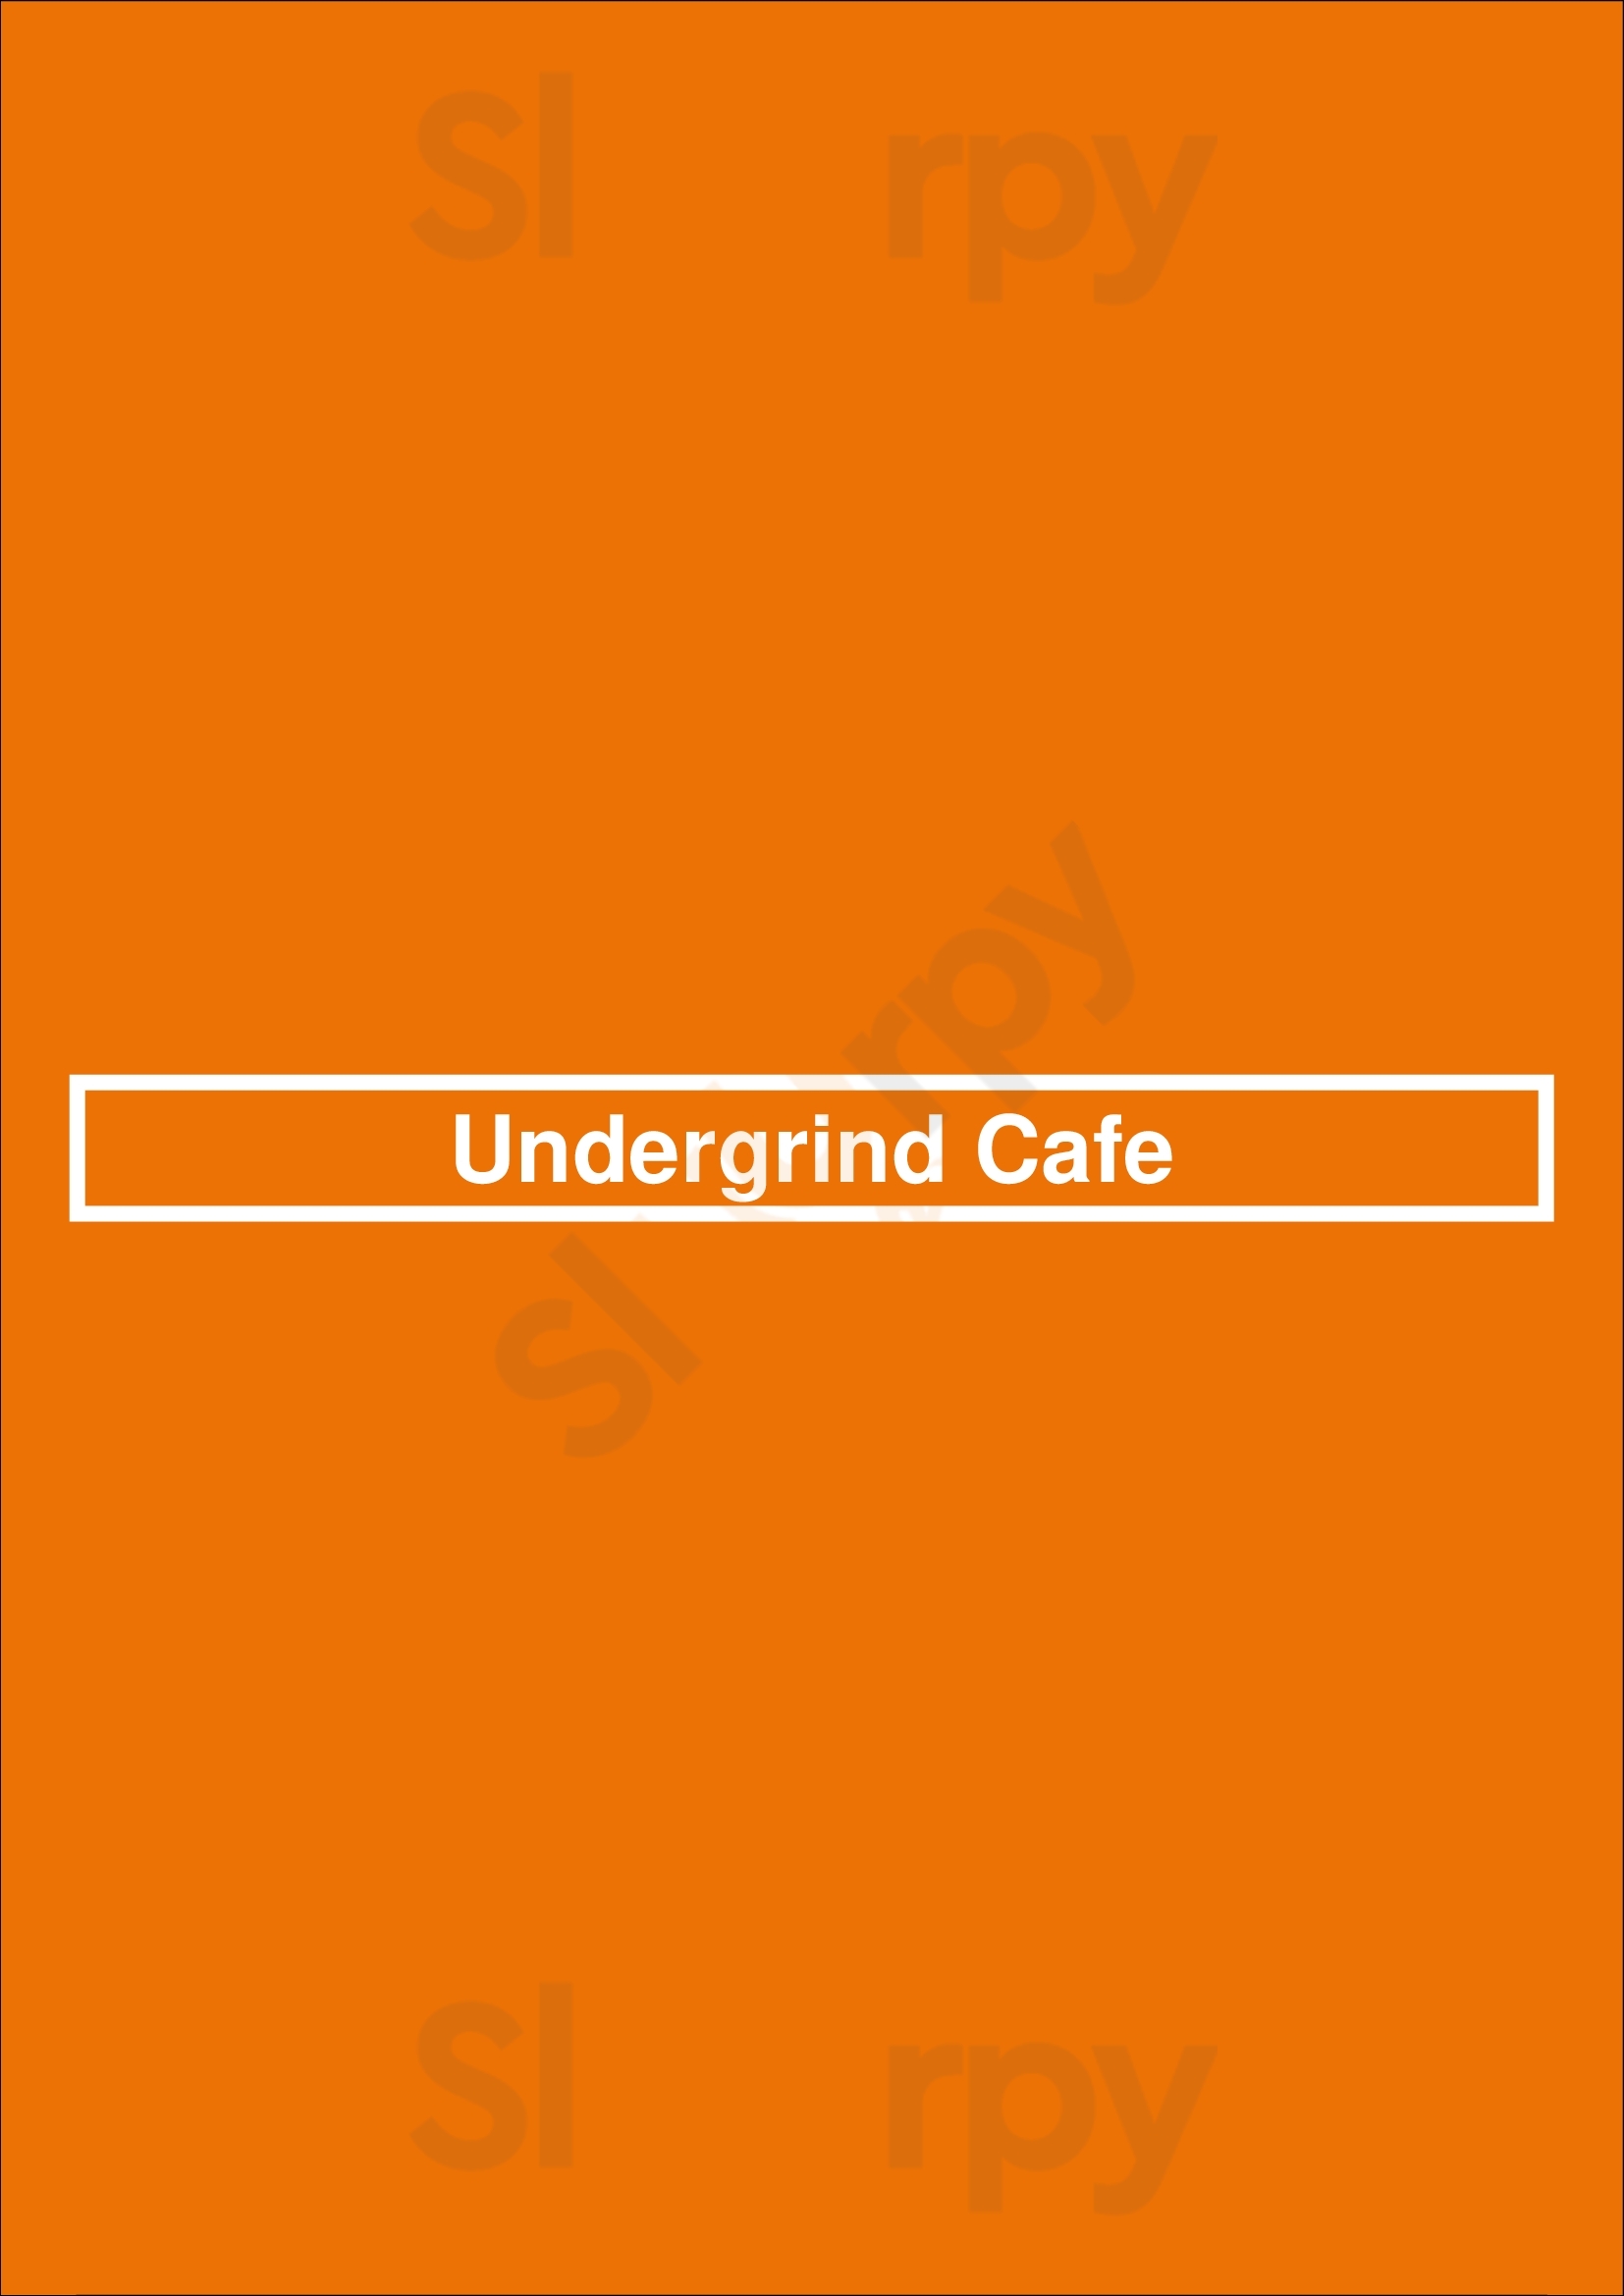 Undergrind Cafe Los Angeles Menu - 1